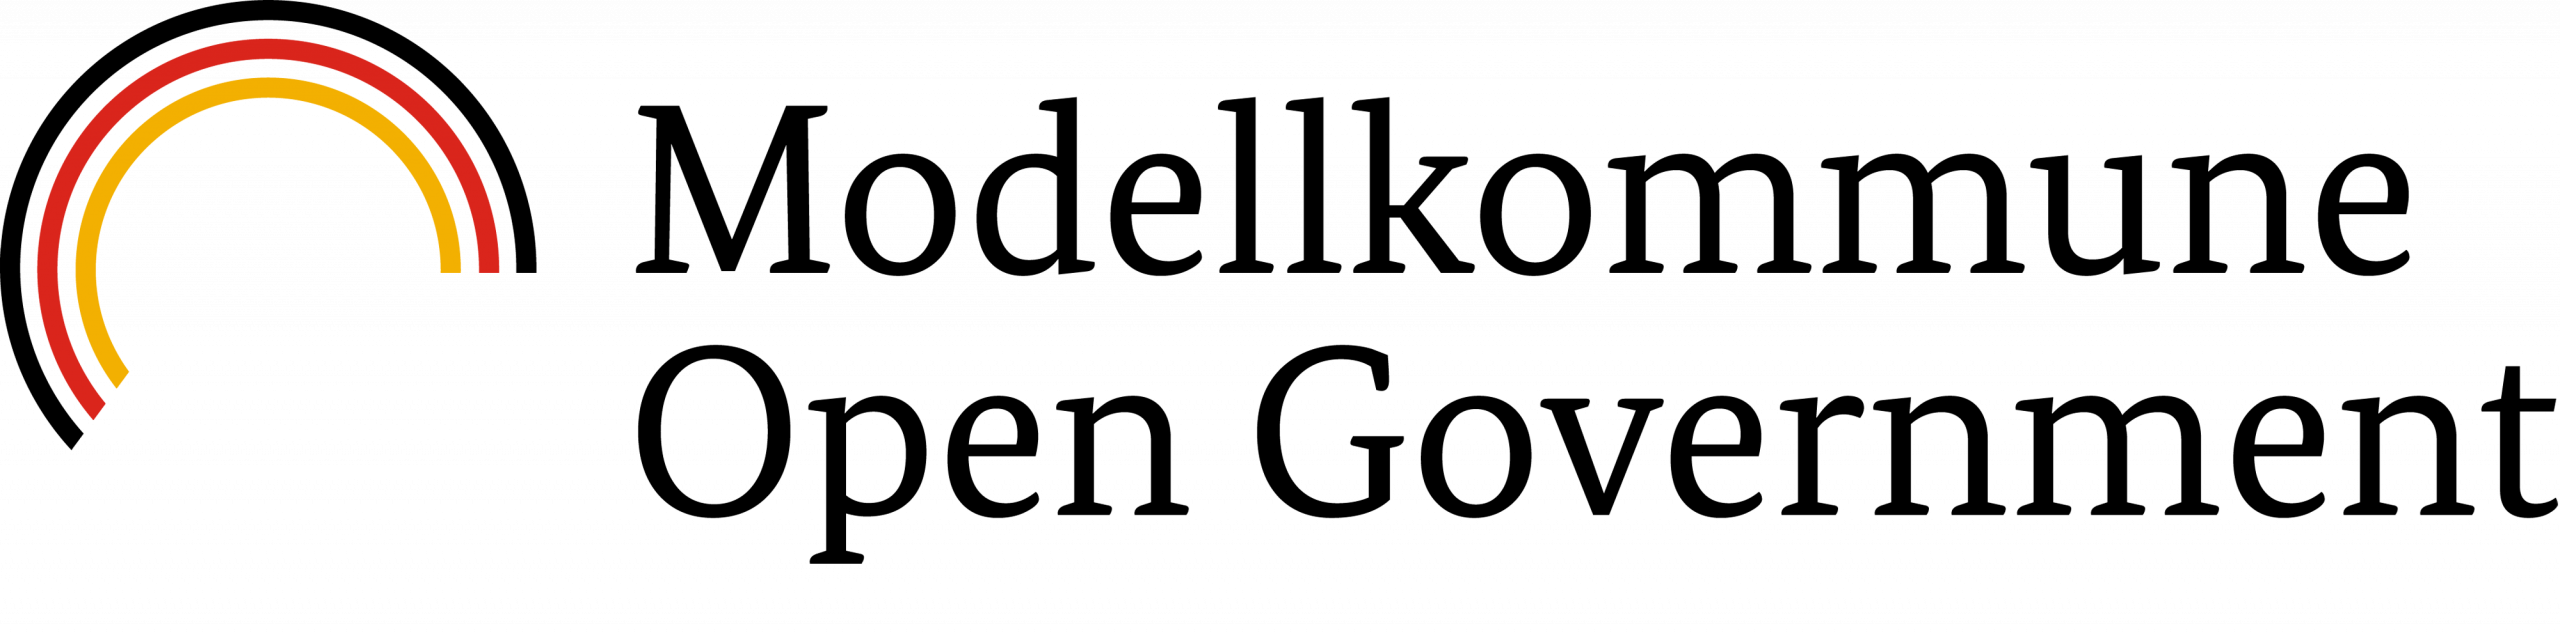 Logo_Modellkommune-opengov.png